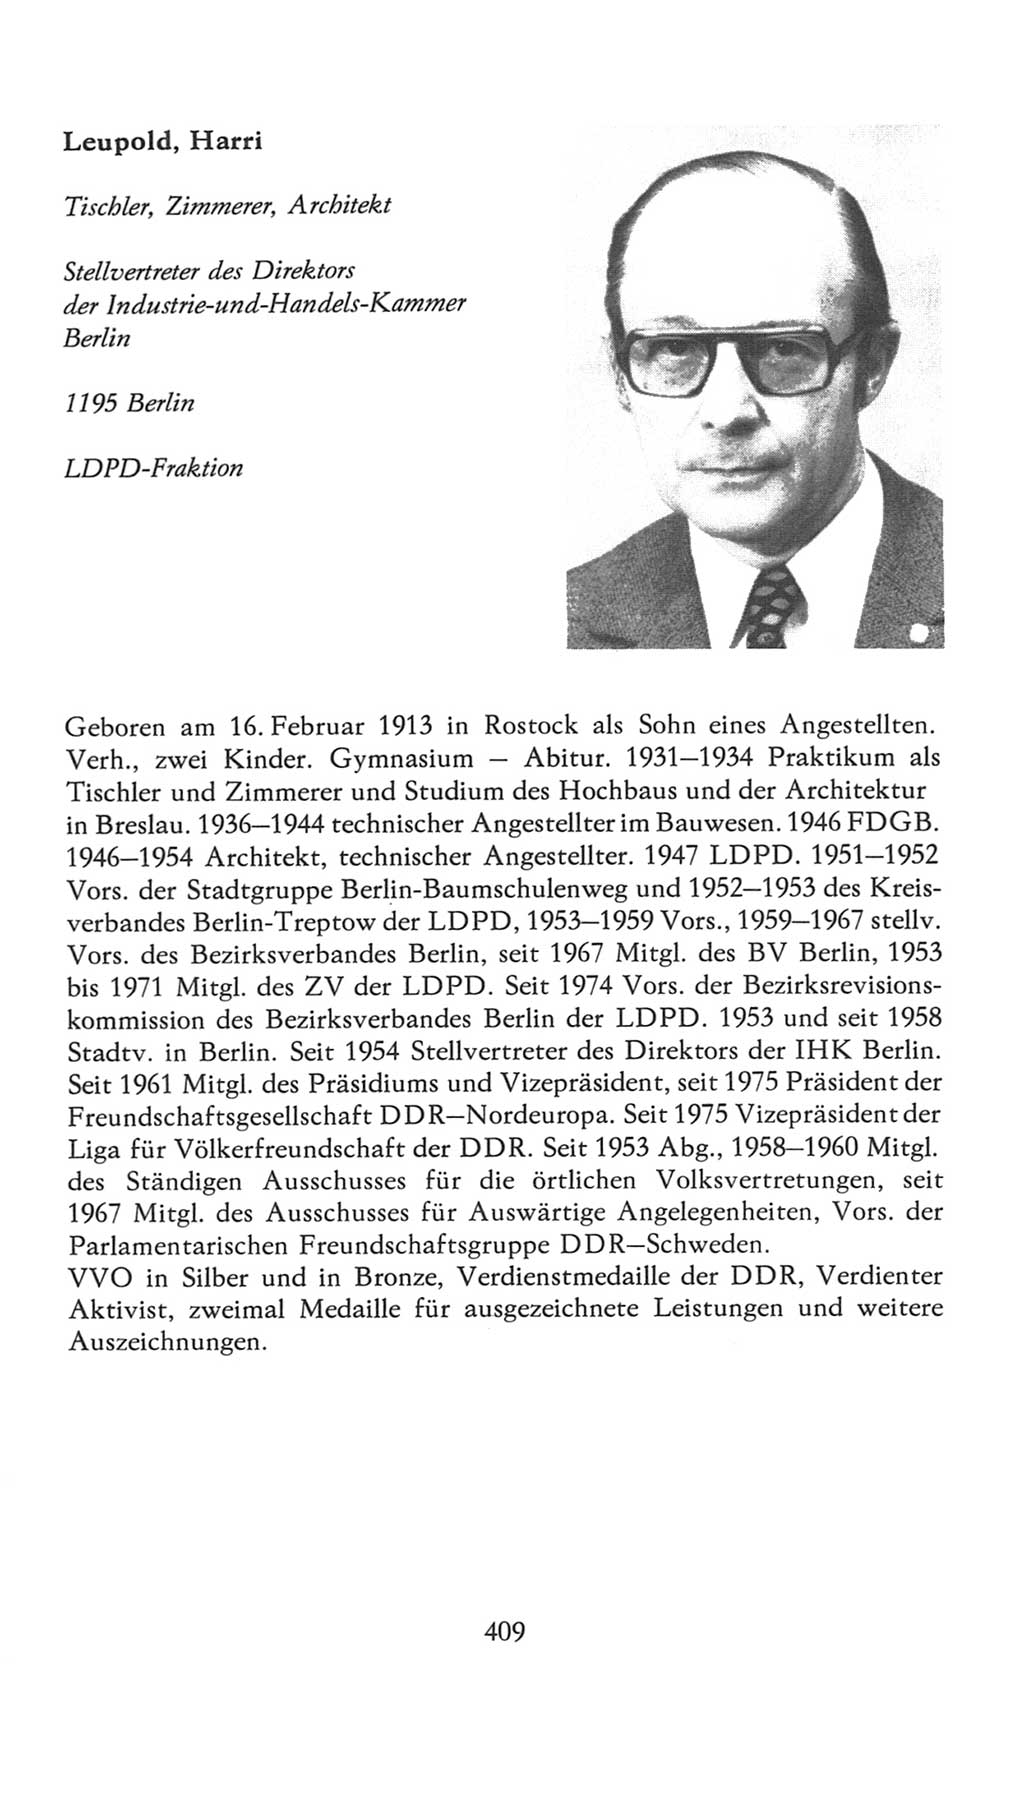 Volkskammer (VK) der Deutschen Demokratischen Republik (DDR), 7. Wahlperiode 1976-1981, Seite 409 (VK. DDR 7. WP. 1976-1981, S. 409)